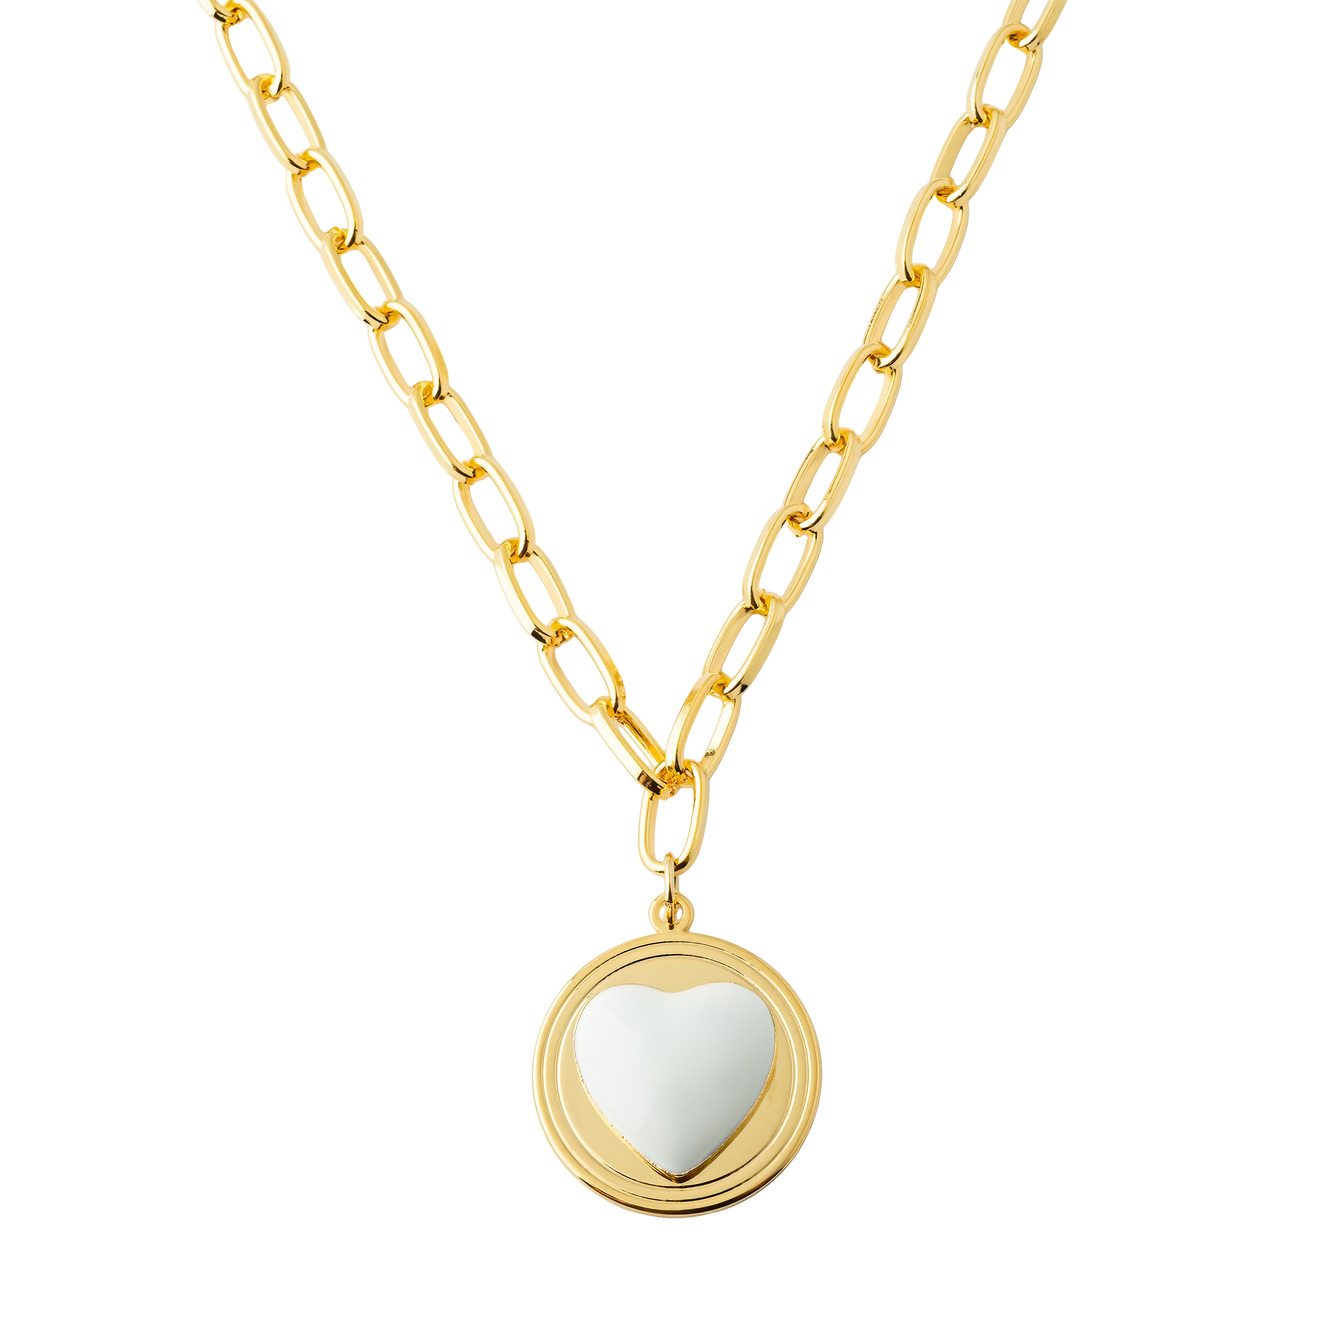 Aqua Золотистое колье-цепь с медальоном с белым сердцем aqua золотистое колье из жемчуга